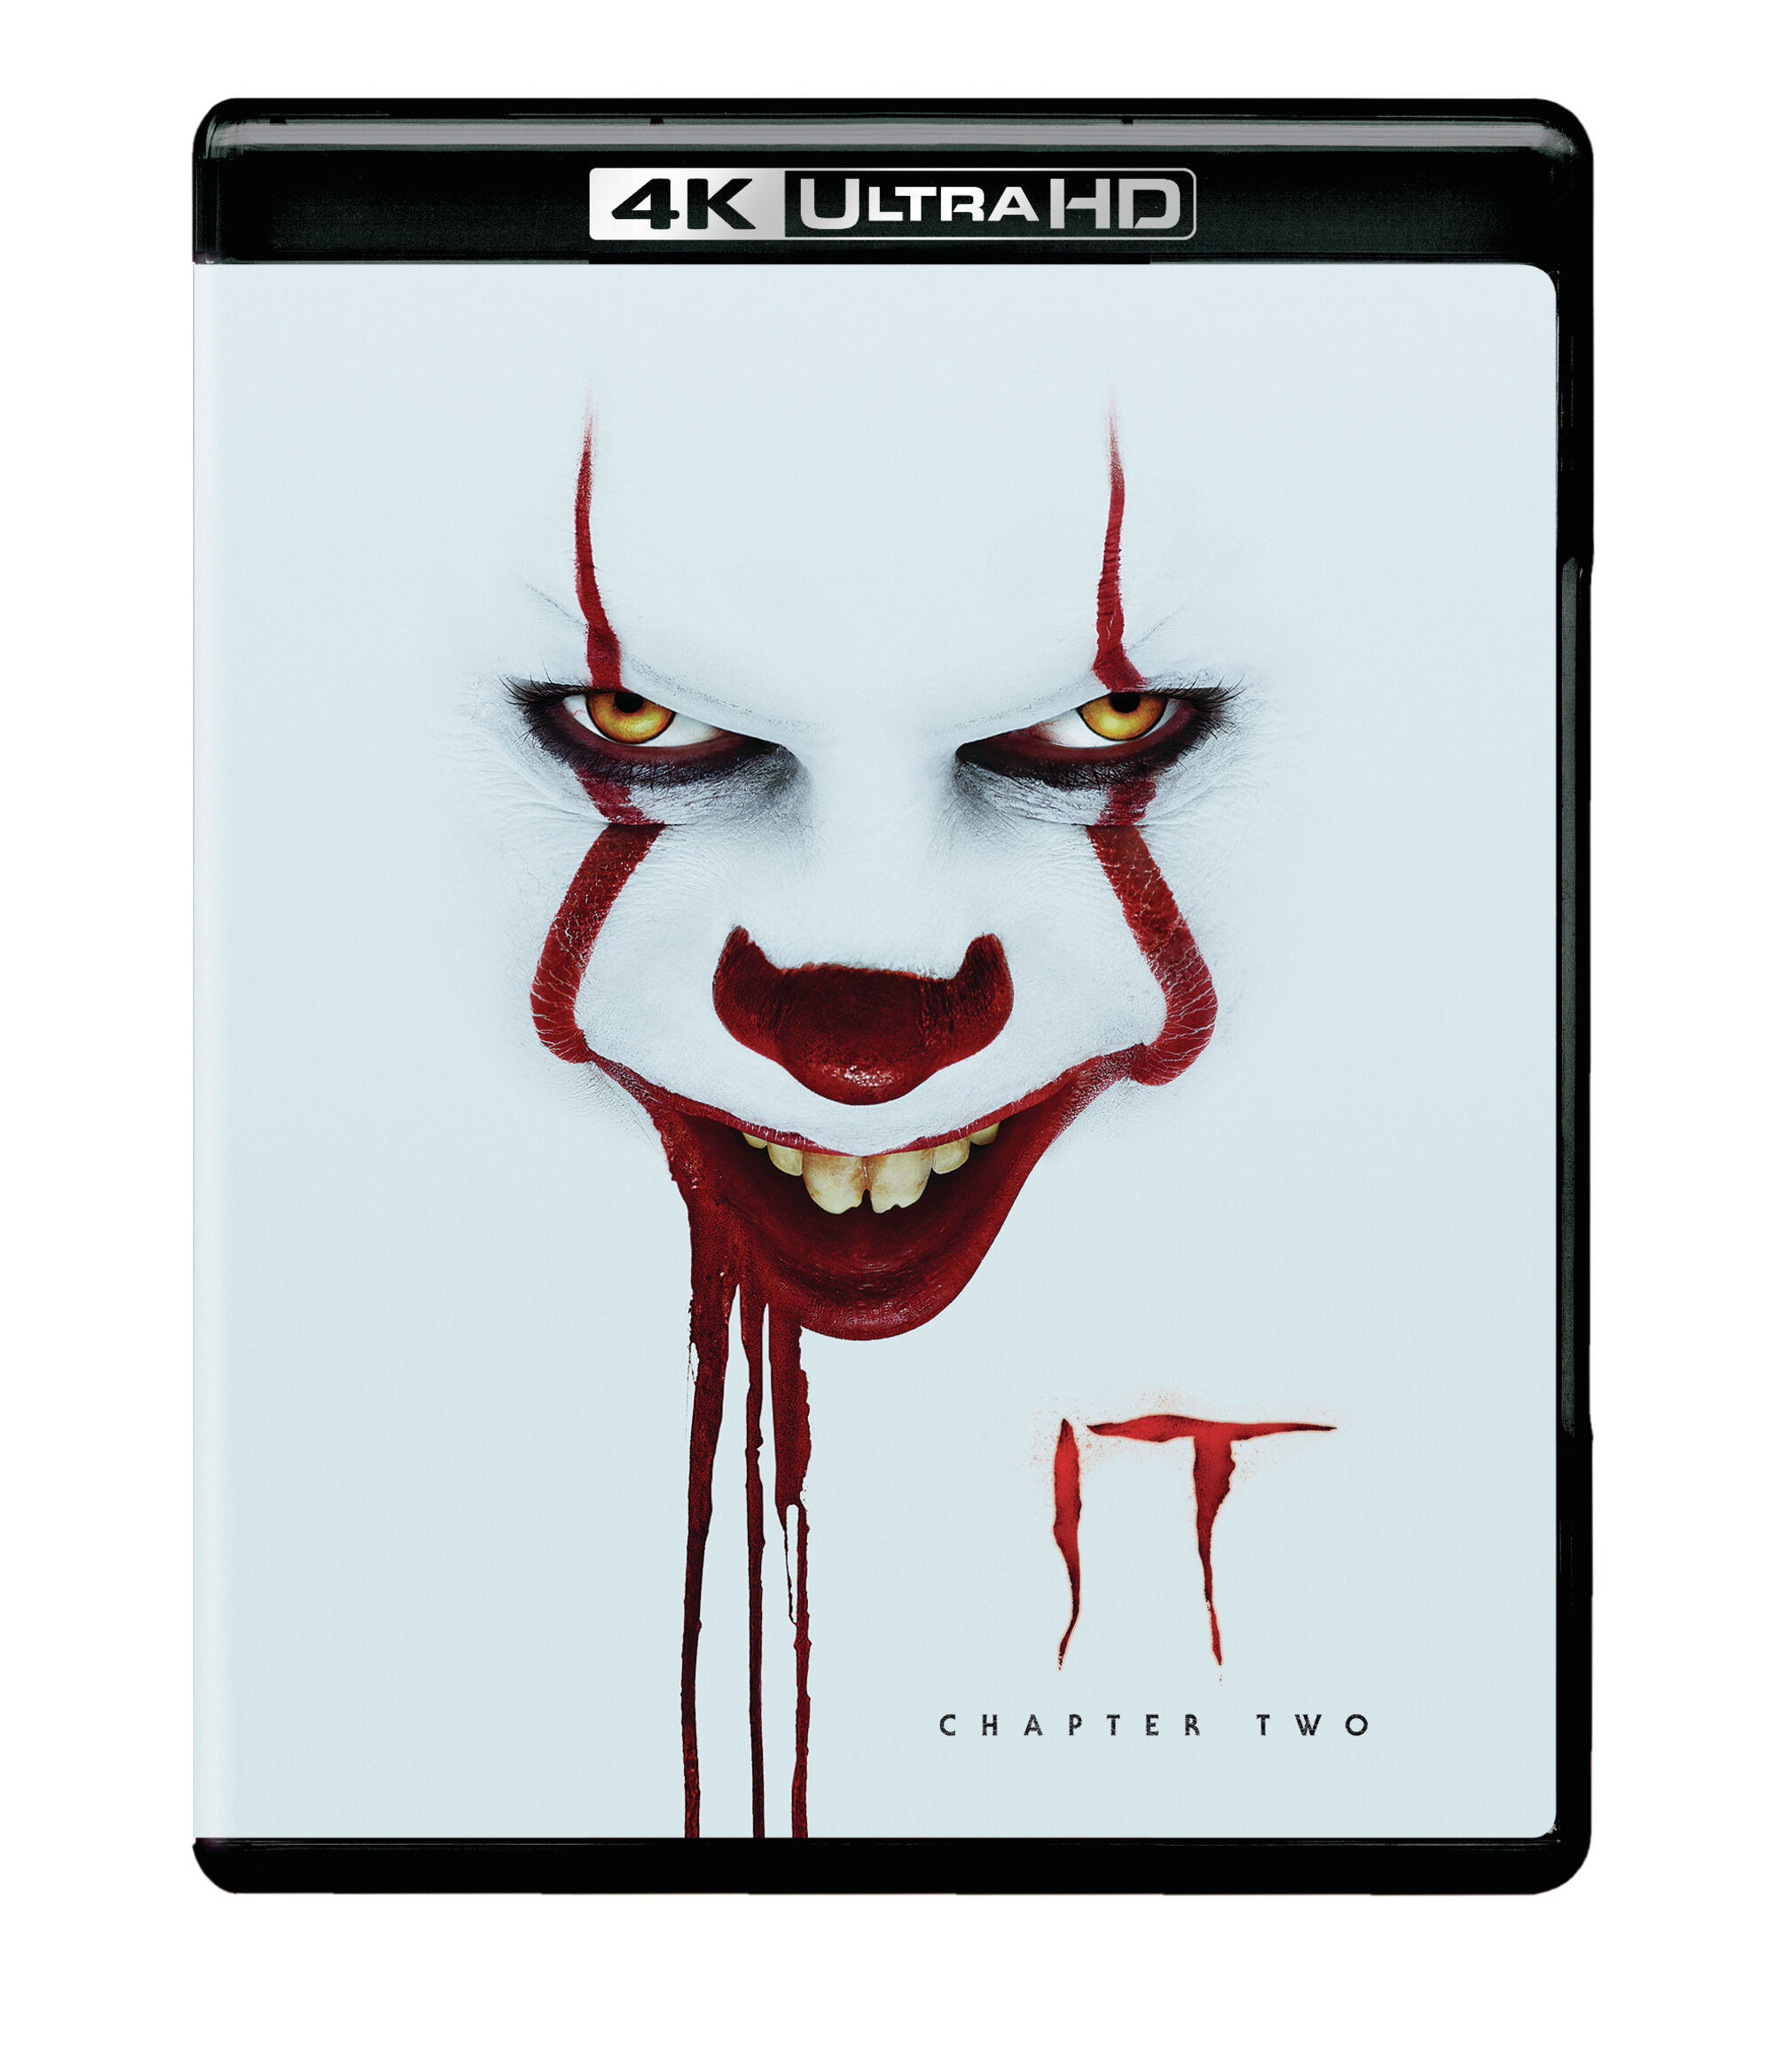 It: Chapter Two (4K Ultra HD + Blu-ray) - UHD [ 2019 ]  - Horror Movies On 4K Ultra HD Blu-ray - Movies On GRUV